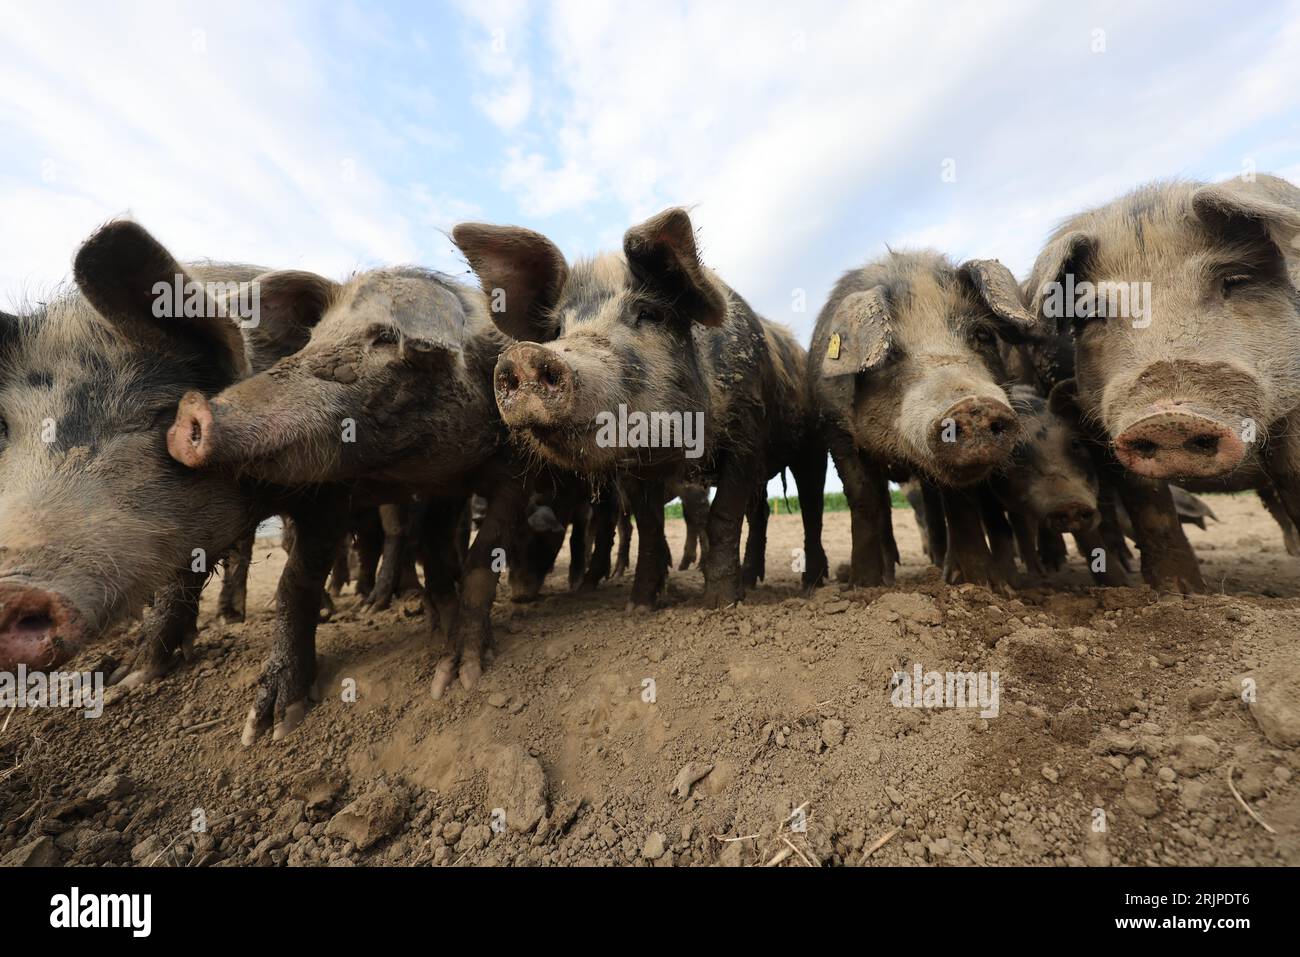 Une vue rapprochée d'un adorable troupeau de cochons celtiques debout sur un sol boueux Banque D'Images